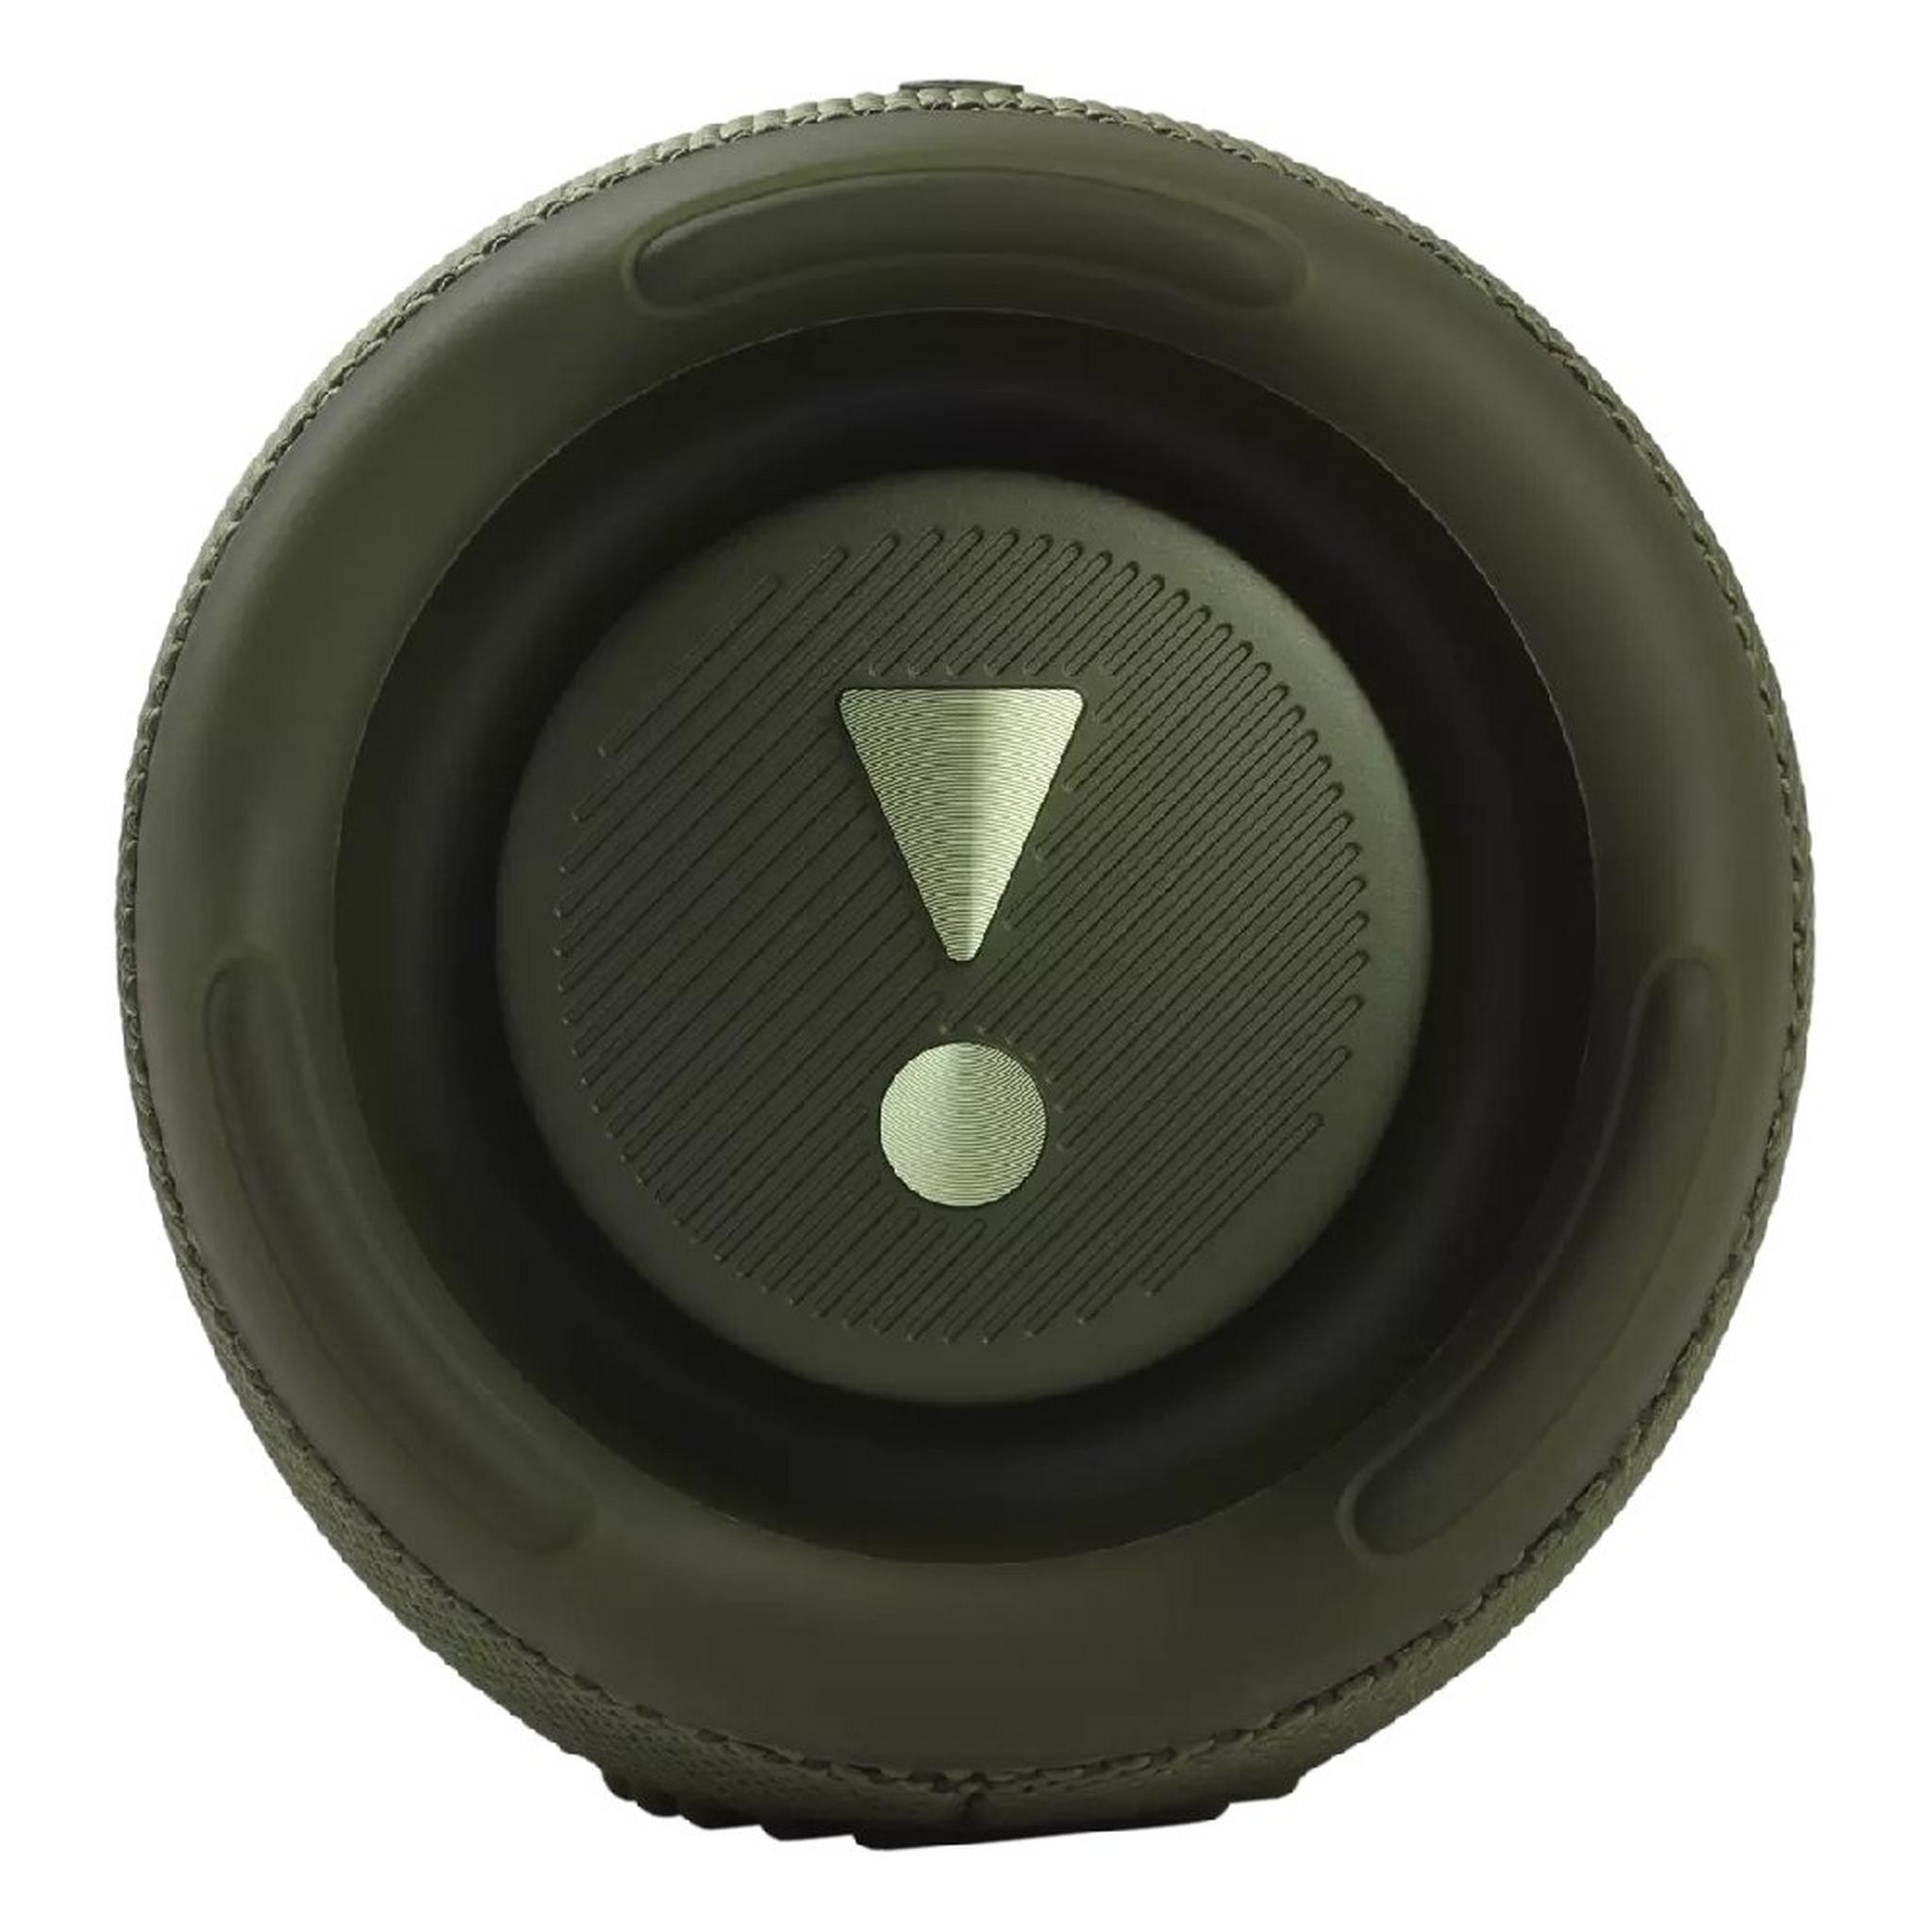 JBL Charge 5 Waterproof Wireless Speaker, 30W - Green